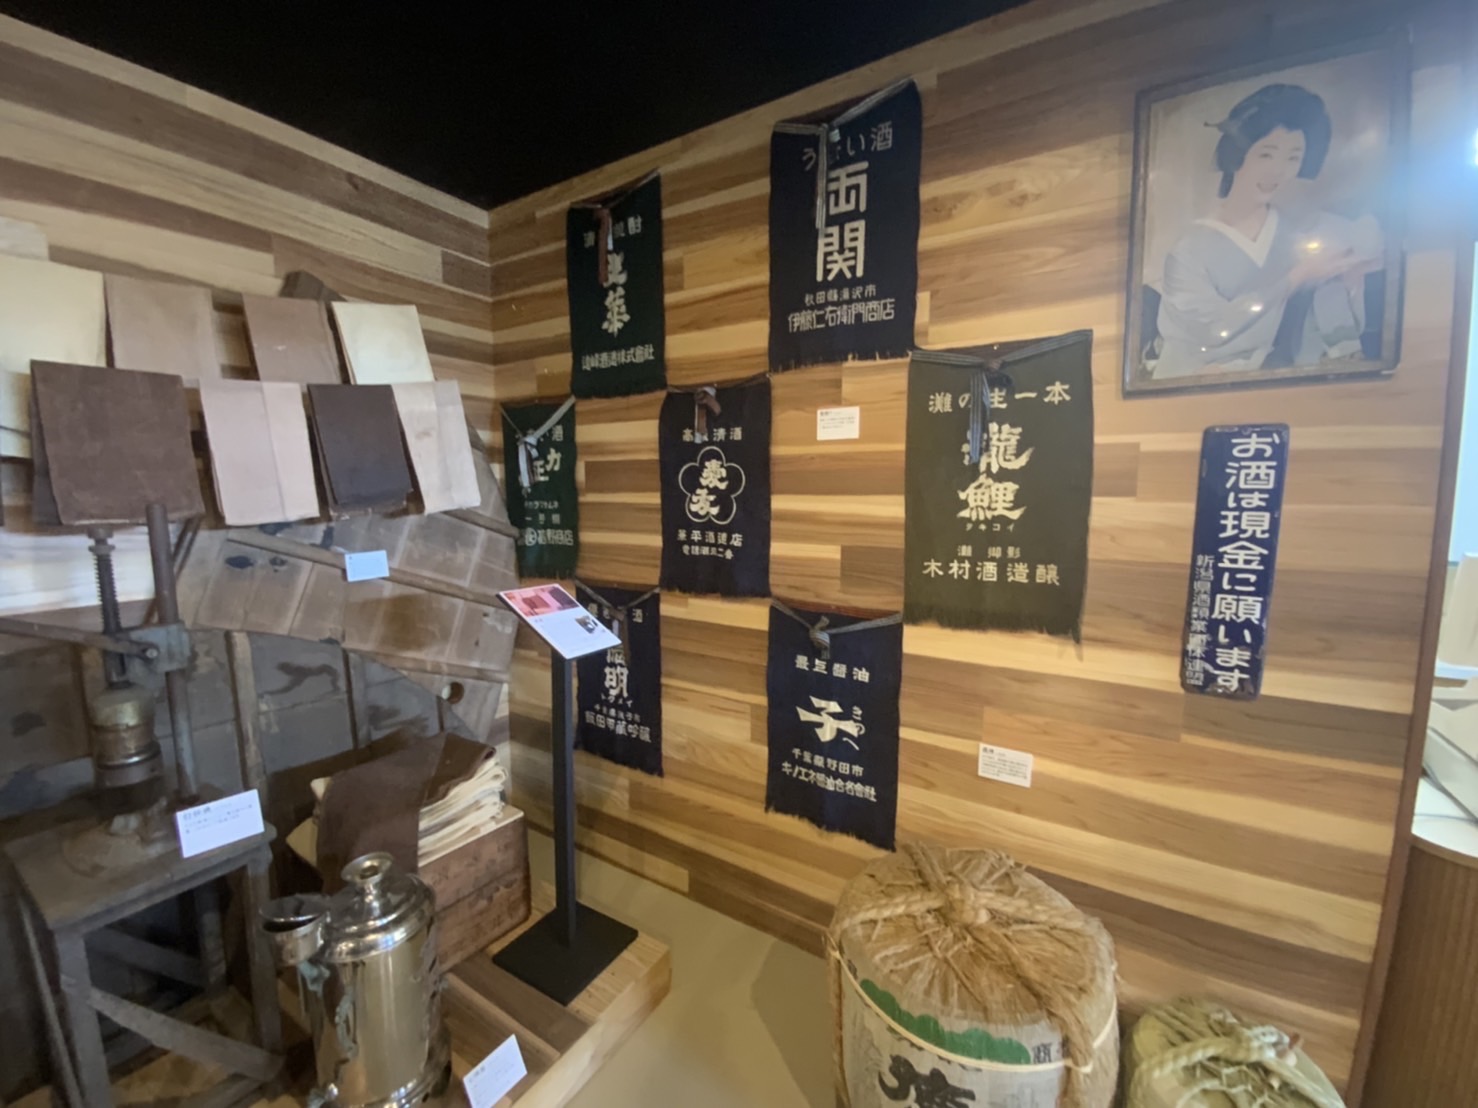 日本酒博物館がオープンしました！ | 銚子市観光協会